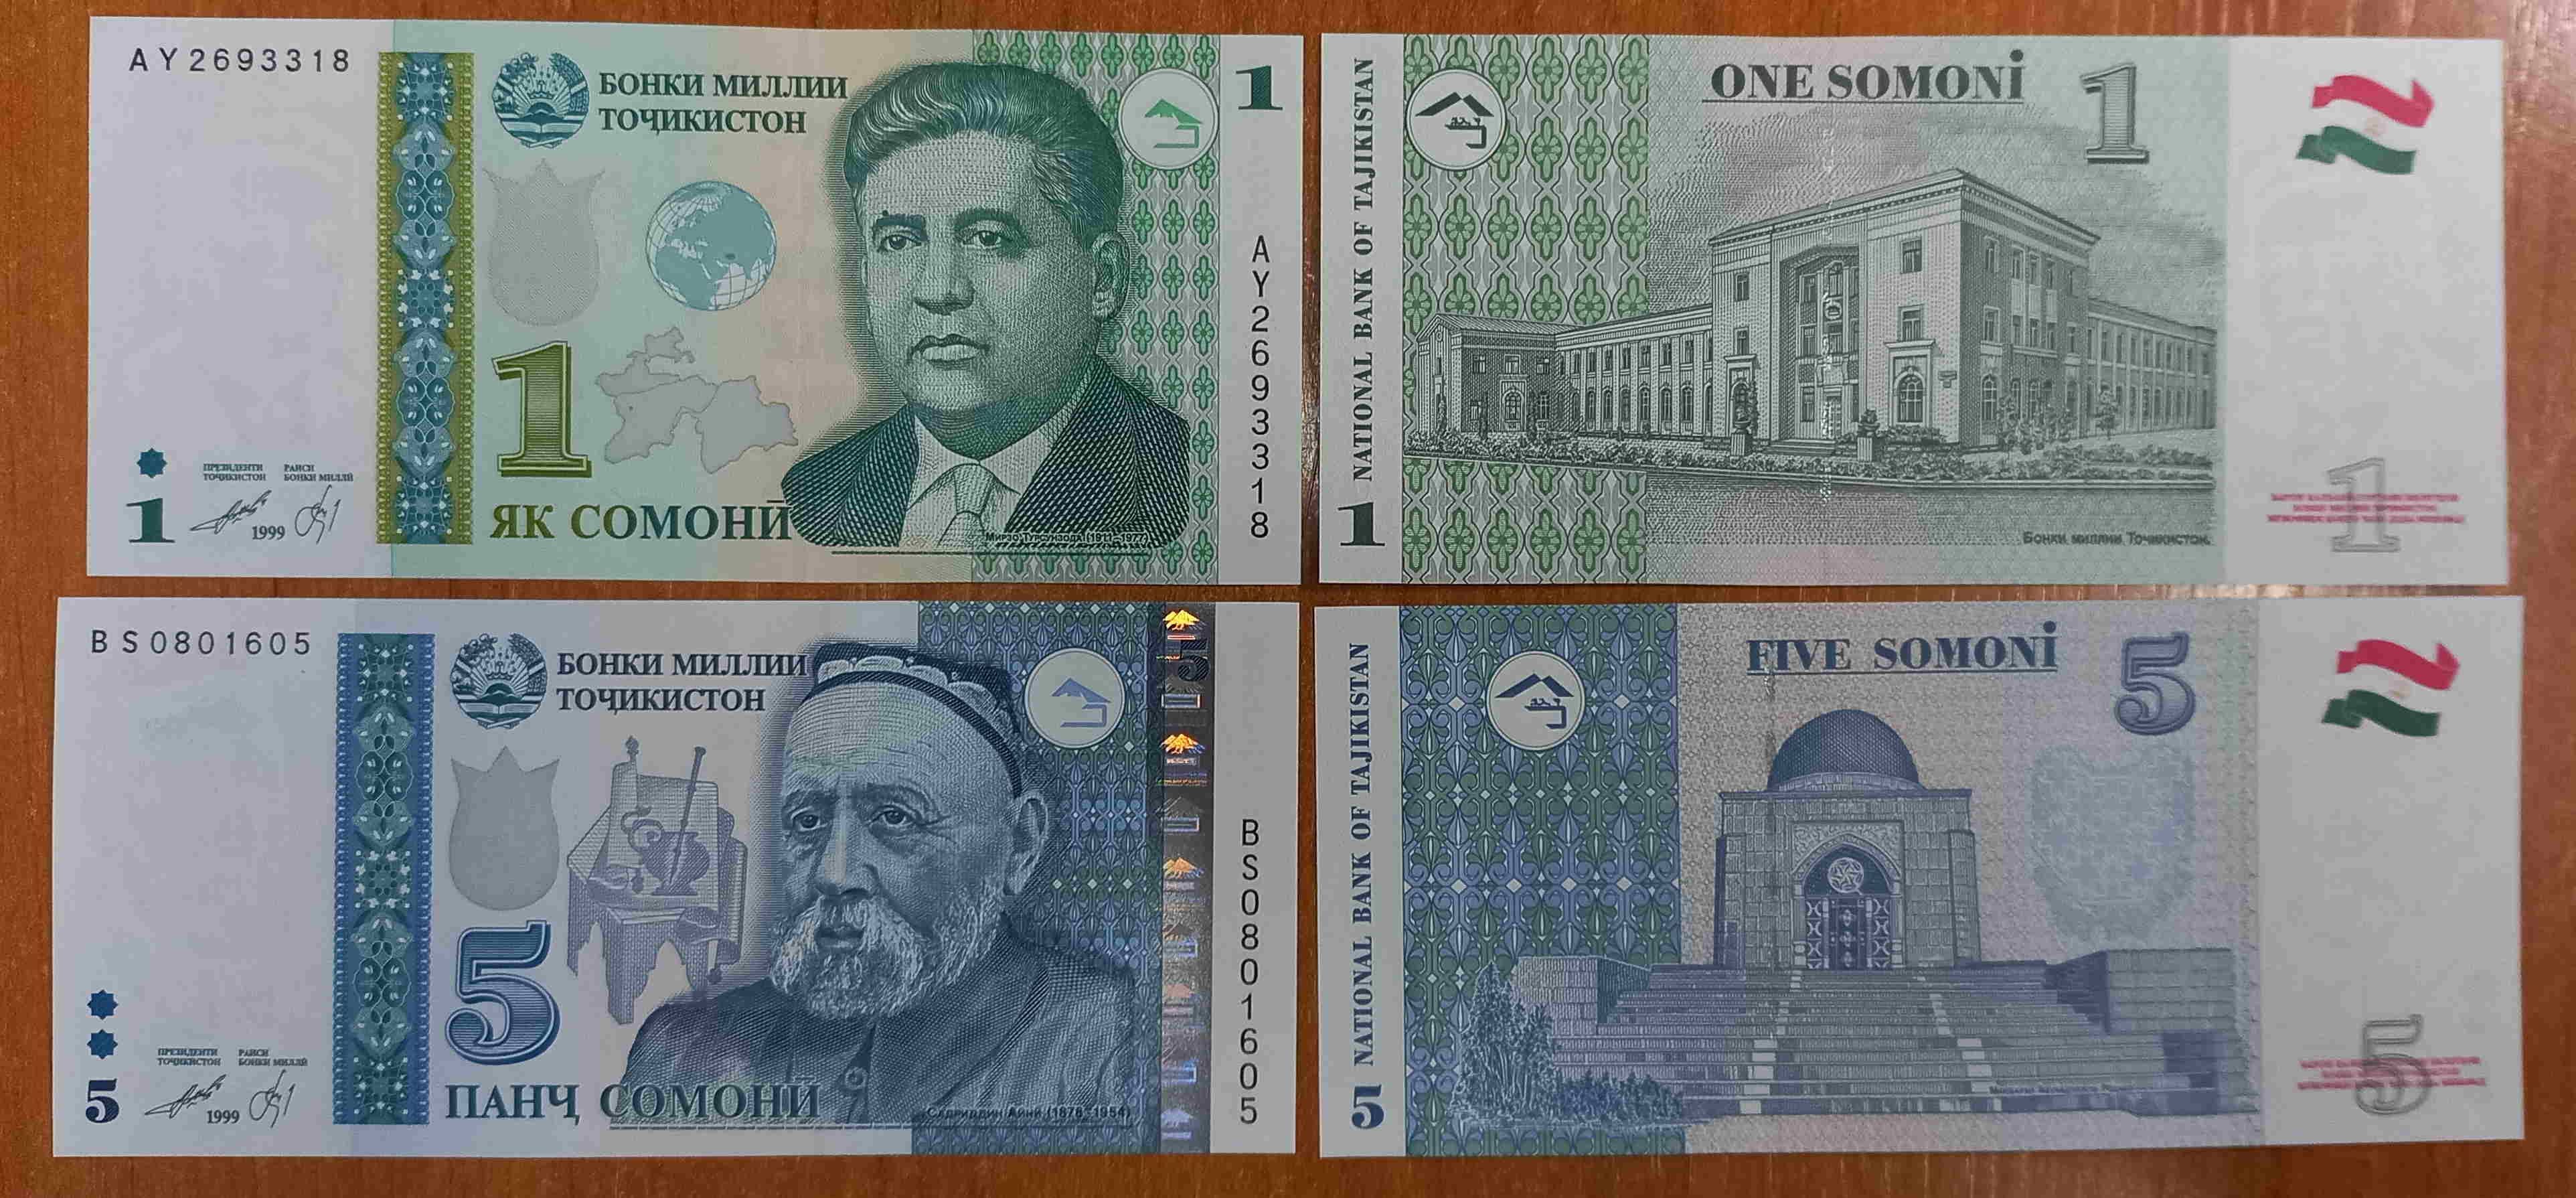 500 сомони в рублях на сегодня. Купюры Таджикистана. 1000 Сомони Таджикистан. Купюры Таджикистана 1000 Сомони. Денежные знаки Таджикистана.